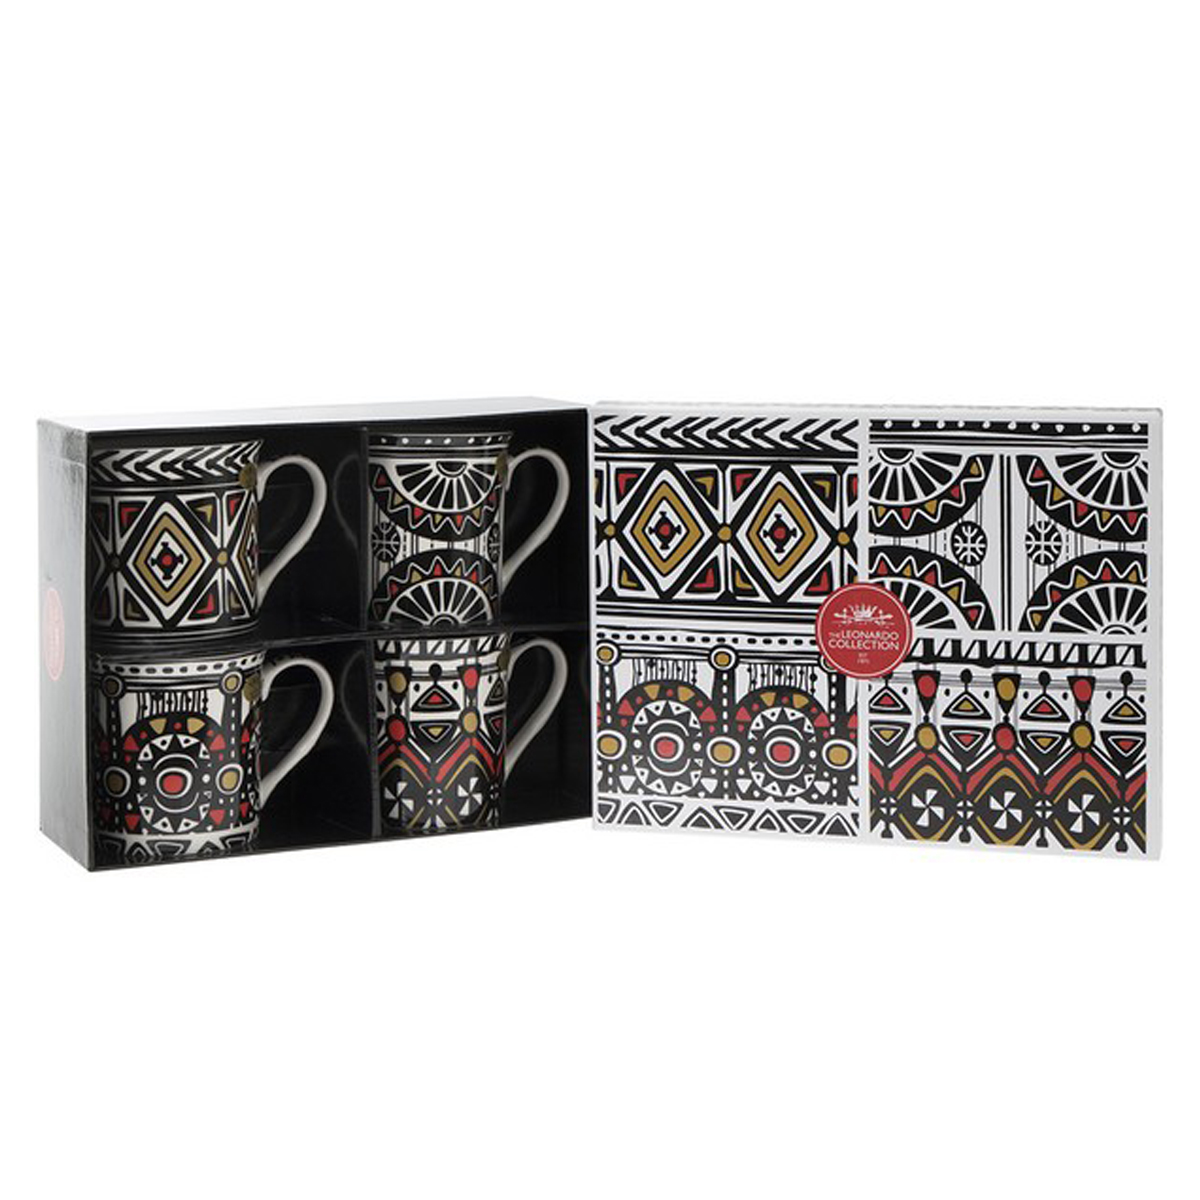 Coffret mugs porcelaine \'Tribal\' noir blanc (4 mugs) - 85x85 mm - [Q1578]